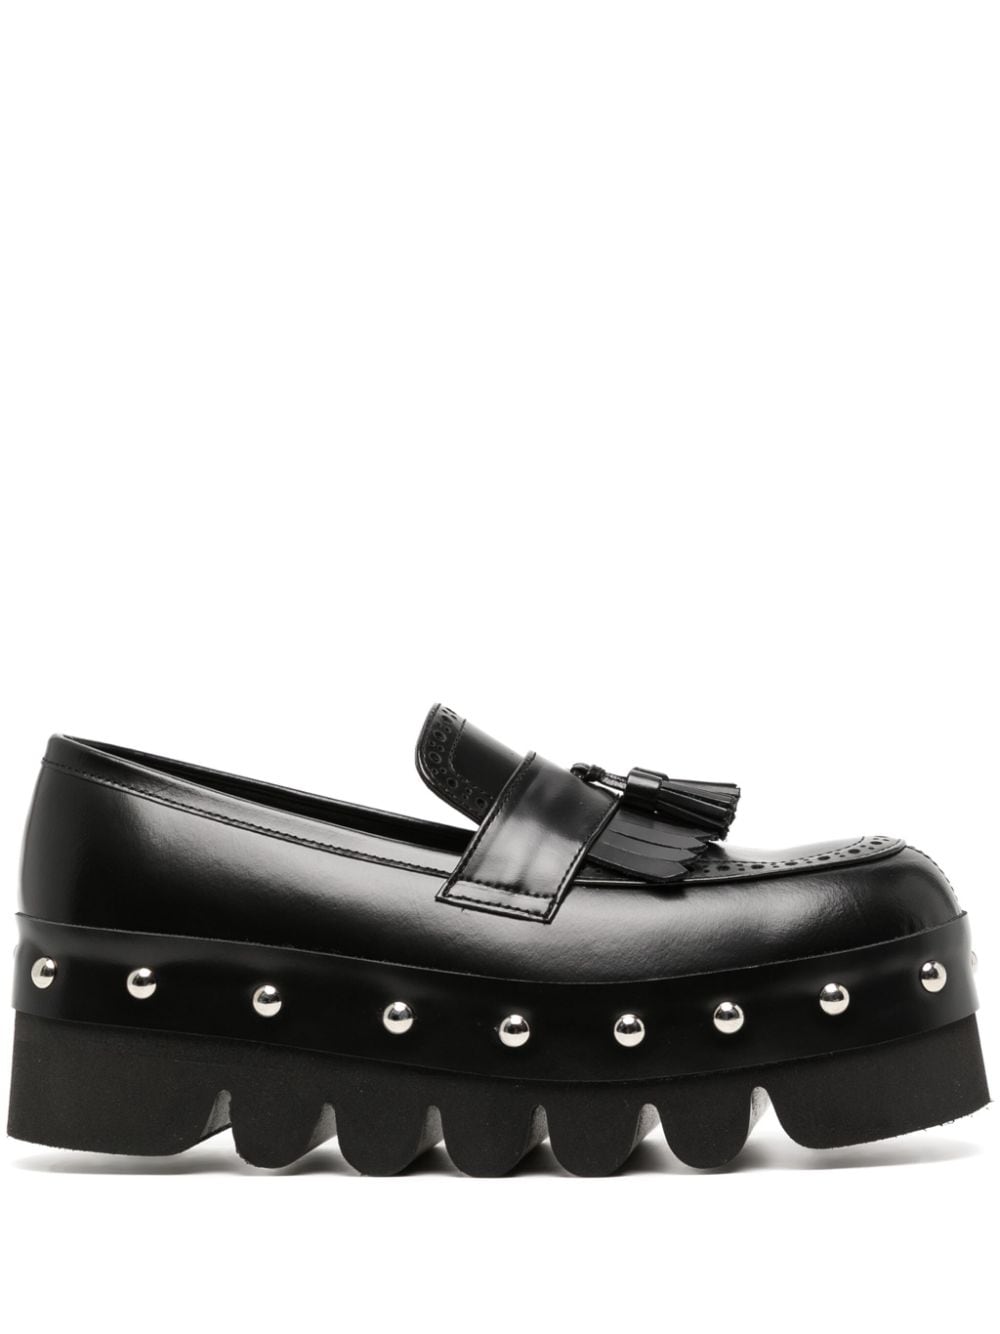 stud-embellished leather loafer shoes